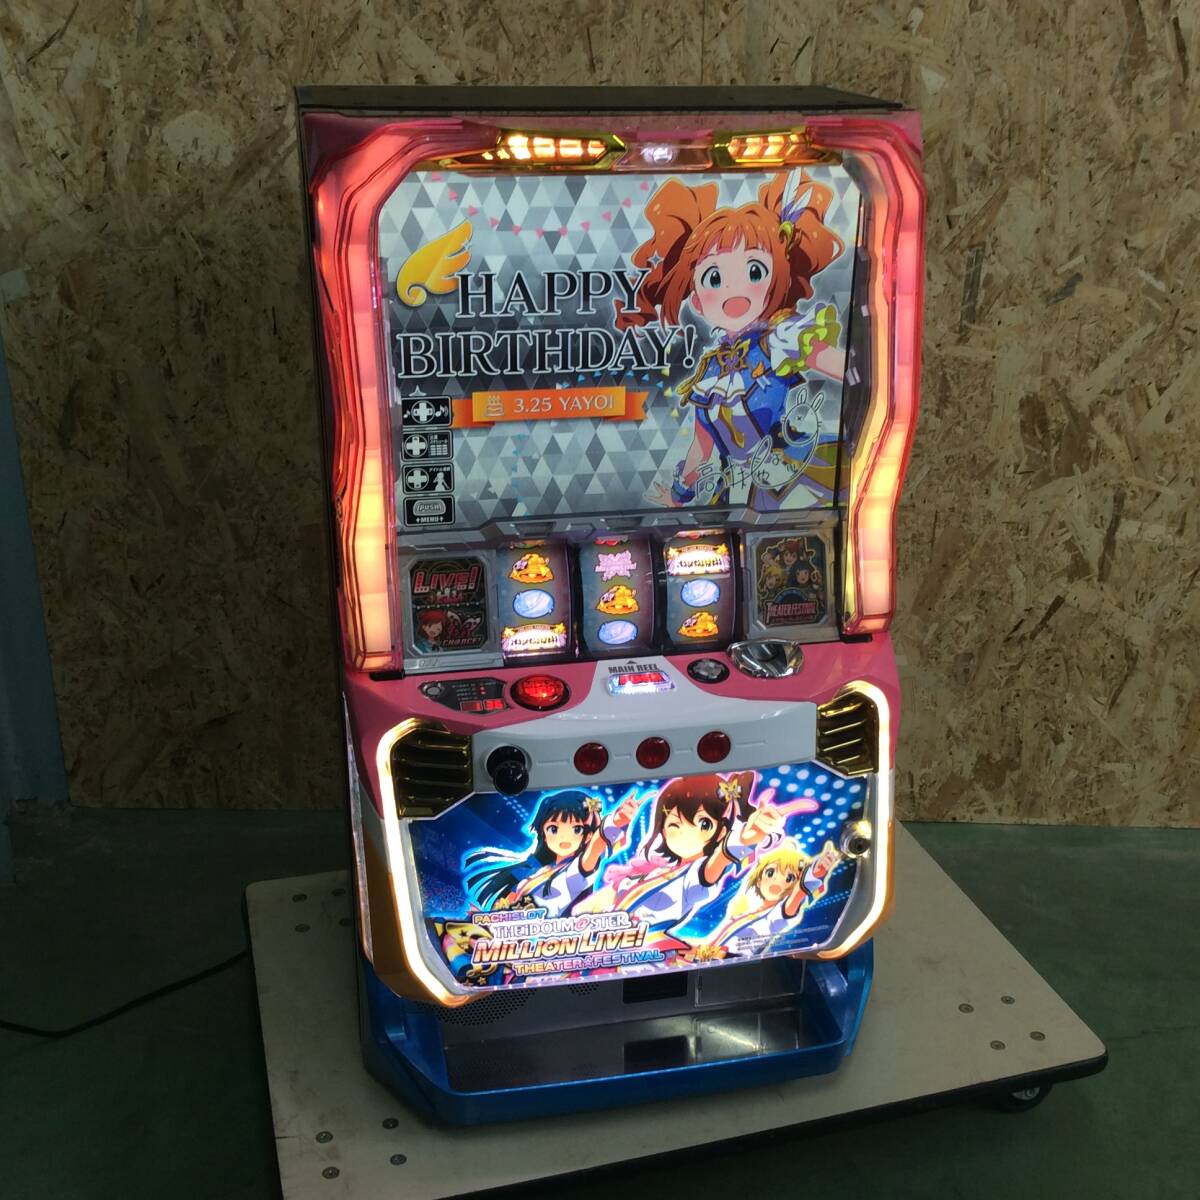 [YH-8486] б/у товар bi стойка игровой автомат The Idol Master million Live монета не необходимо машина ключ есть руководство пользователя .[ самовывоз ограничение * префектура Shizuoka город Hamamatsu ]